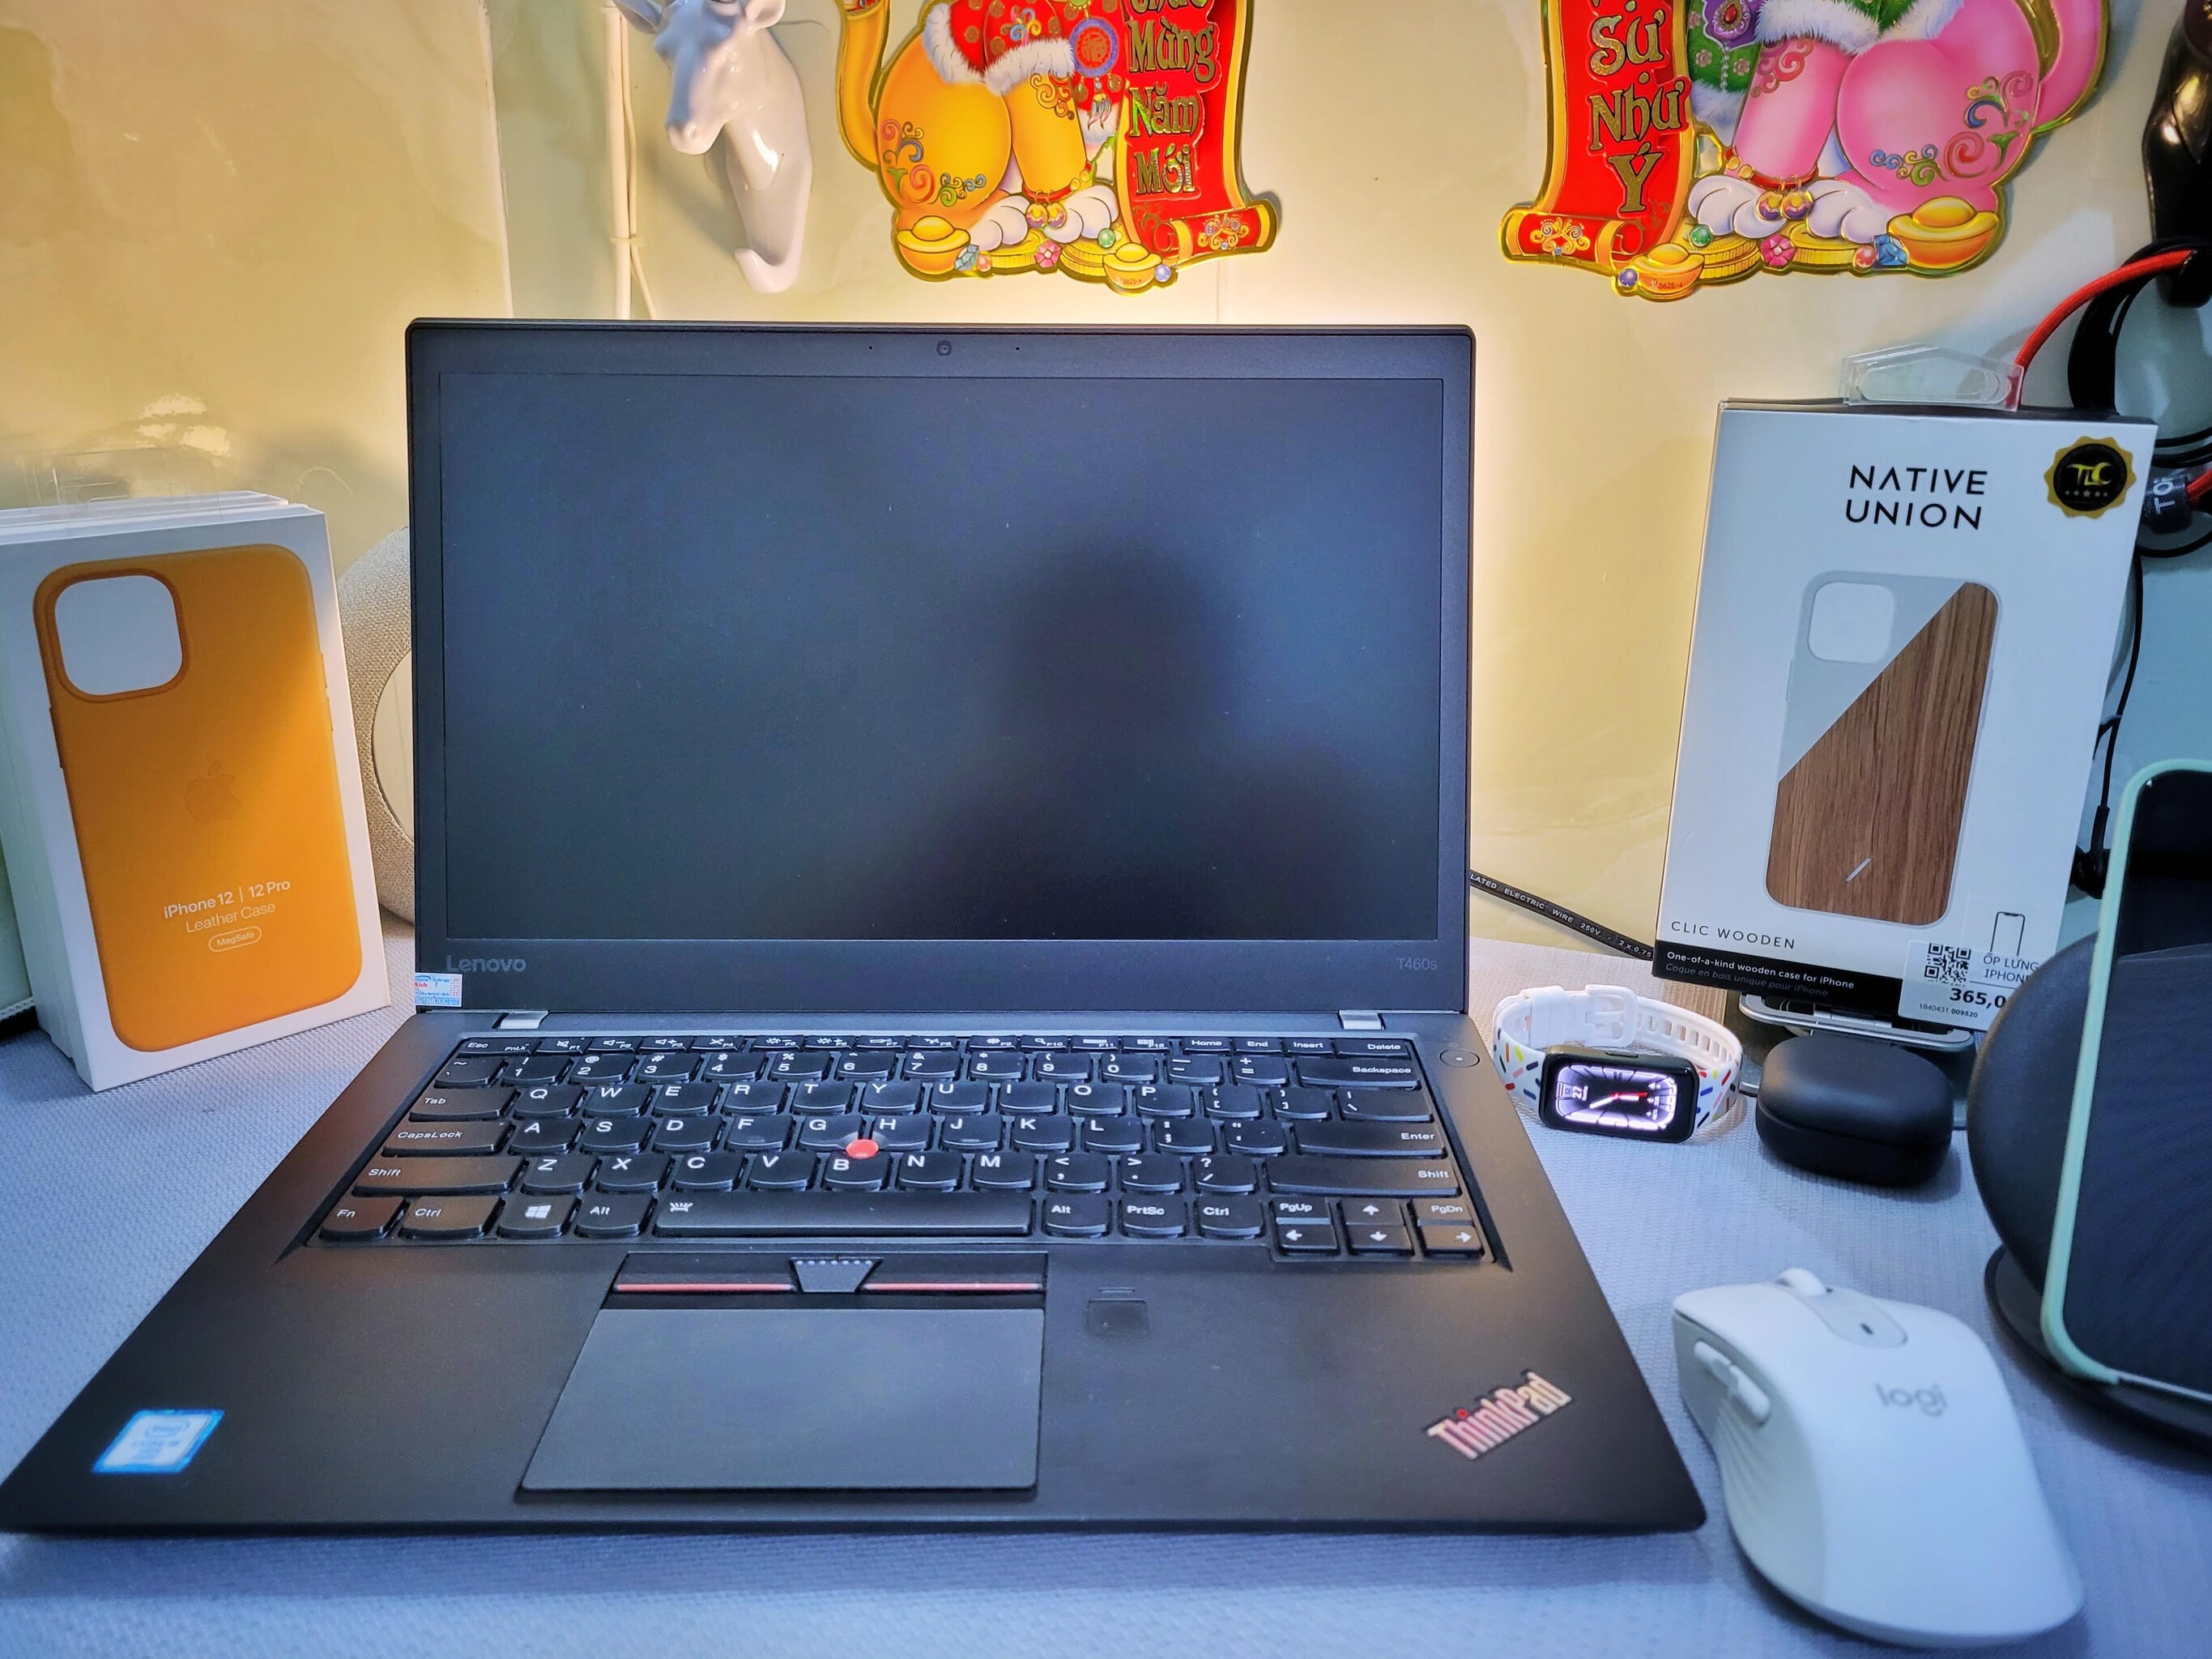 Lý do mua ThinkPad T460s: Phục vụ công việc bán hàng online (máy mình mua cũ 2 năm trước)